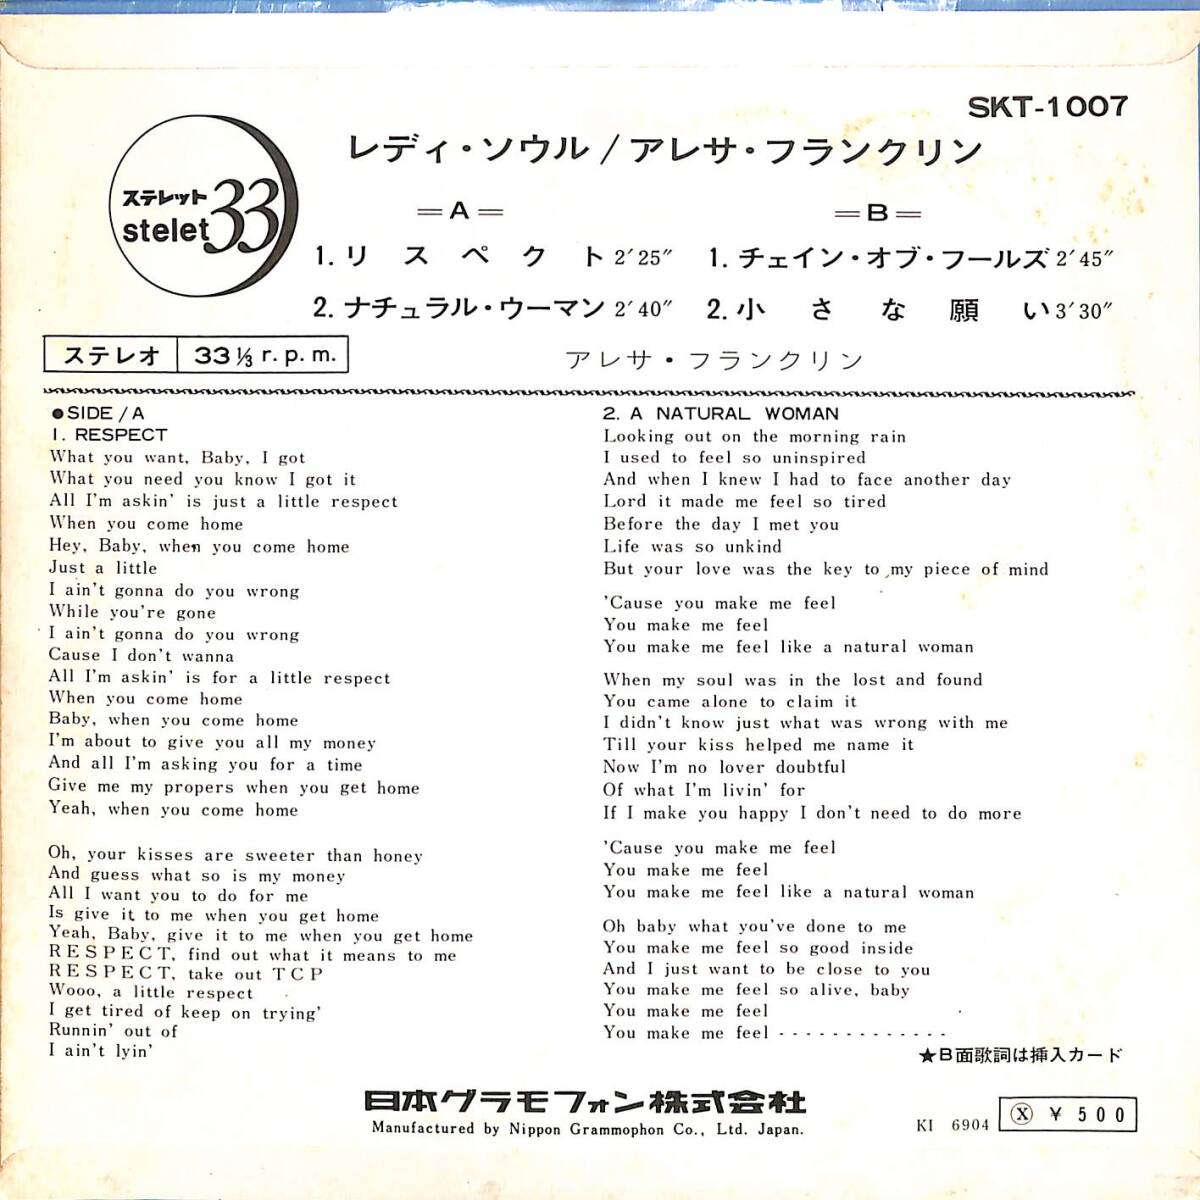 C00195919/EP1枚組-33RPM/アレサ・フランクリン「レディ・ソウル(1969年：SKT-1007)」_画像2